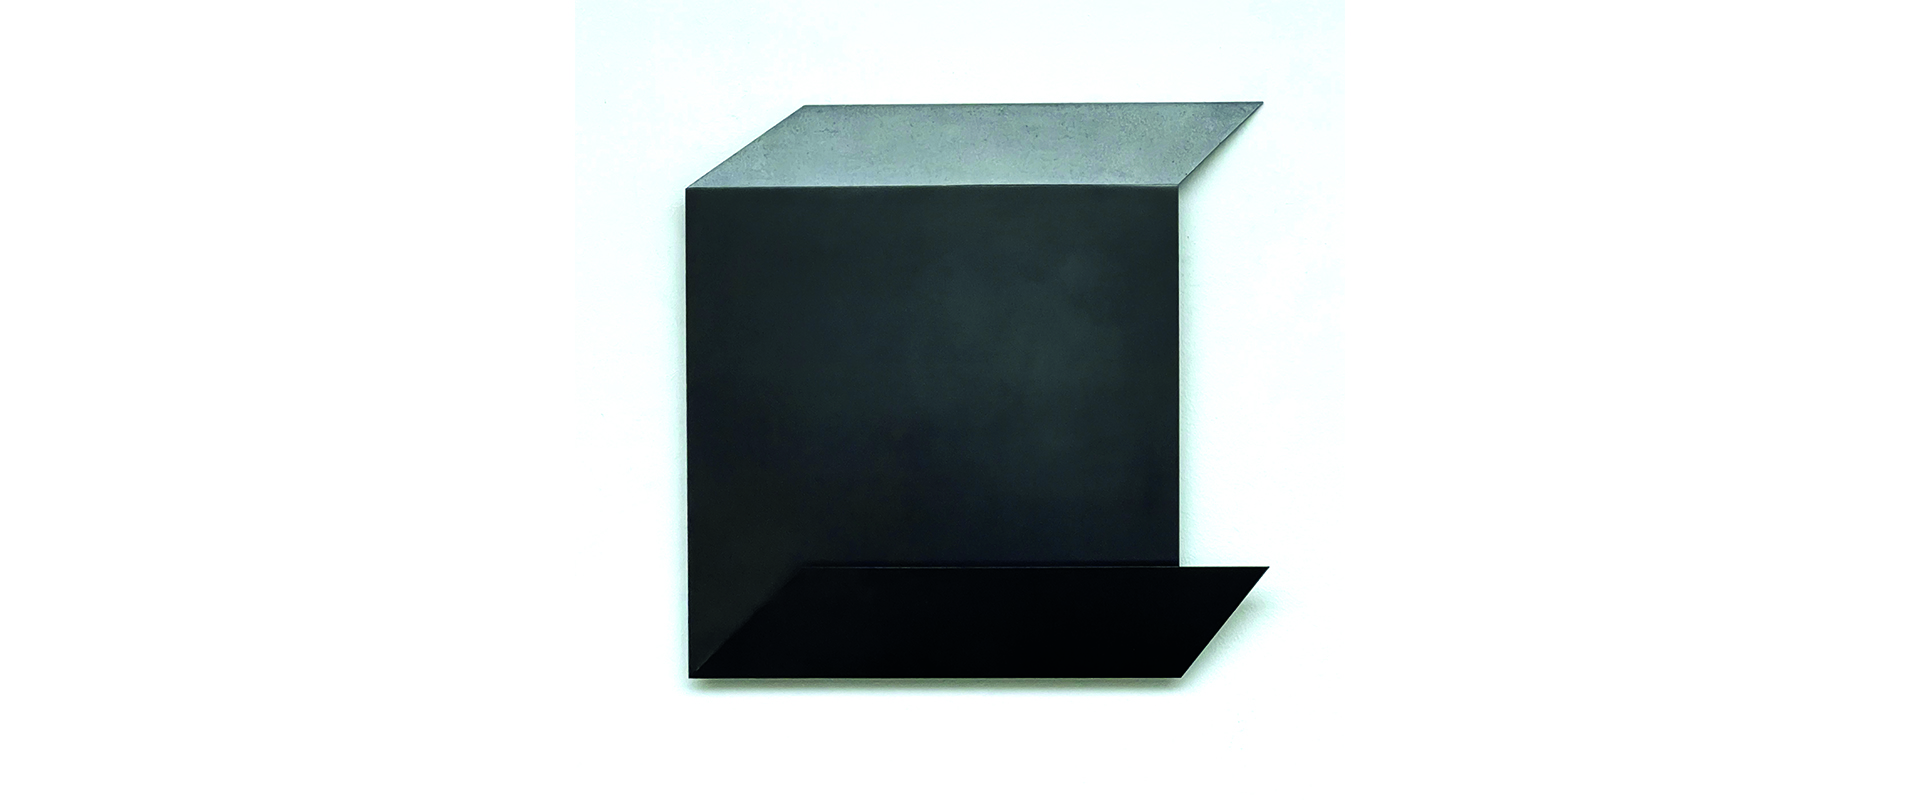 o.T. (WVZ 253) – 1997, Stahl, geschweißt, patiniert, 40 x 40 x 3 cm